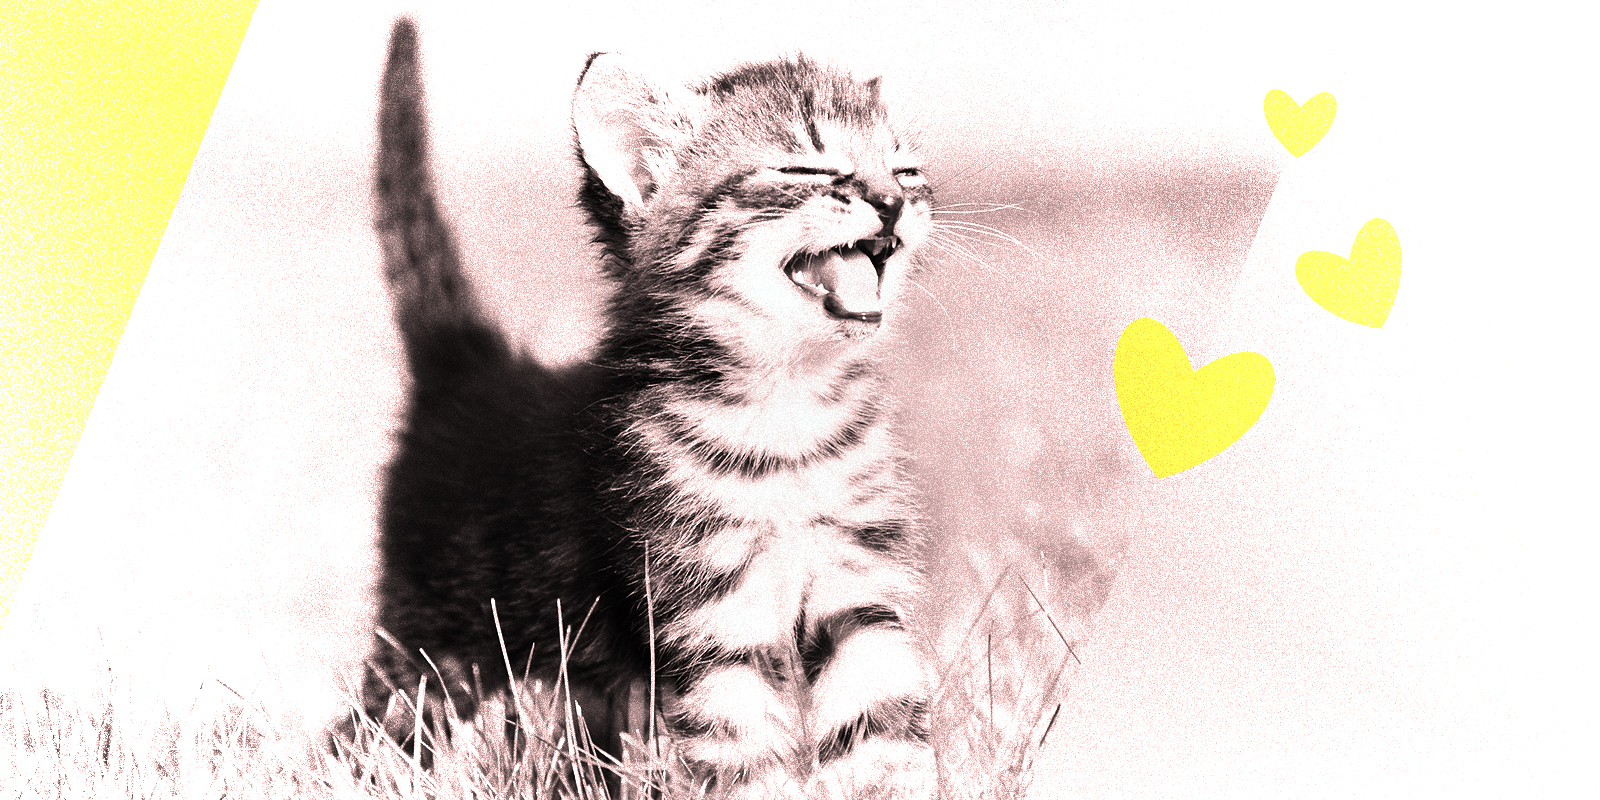 cute kitten in a field laughing